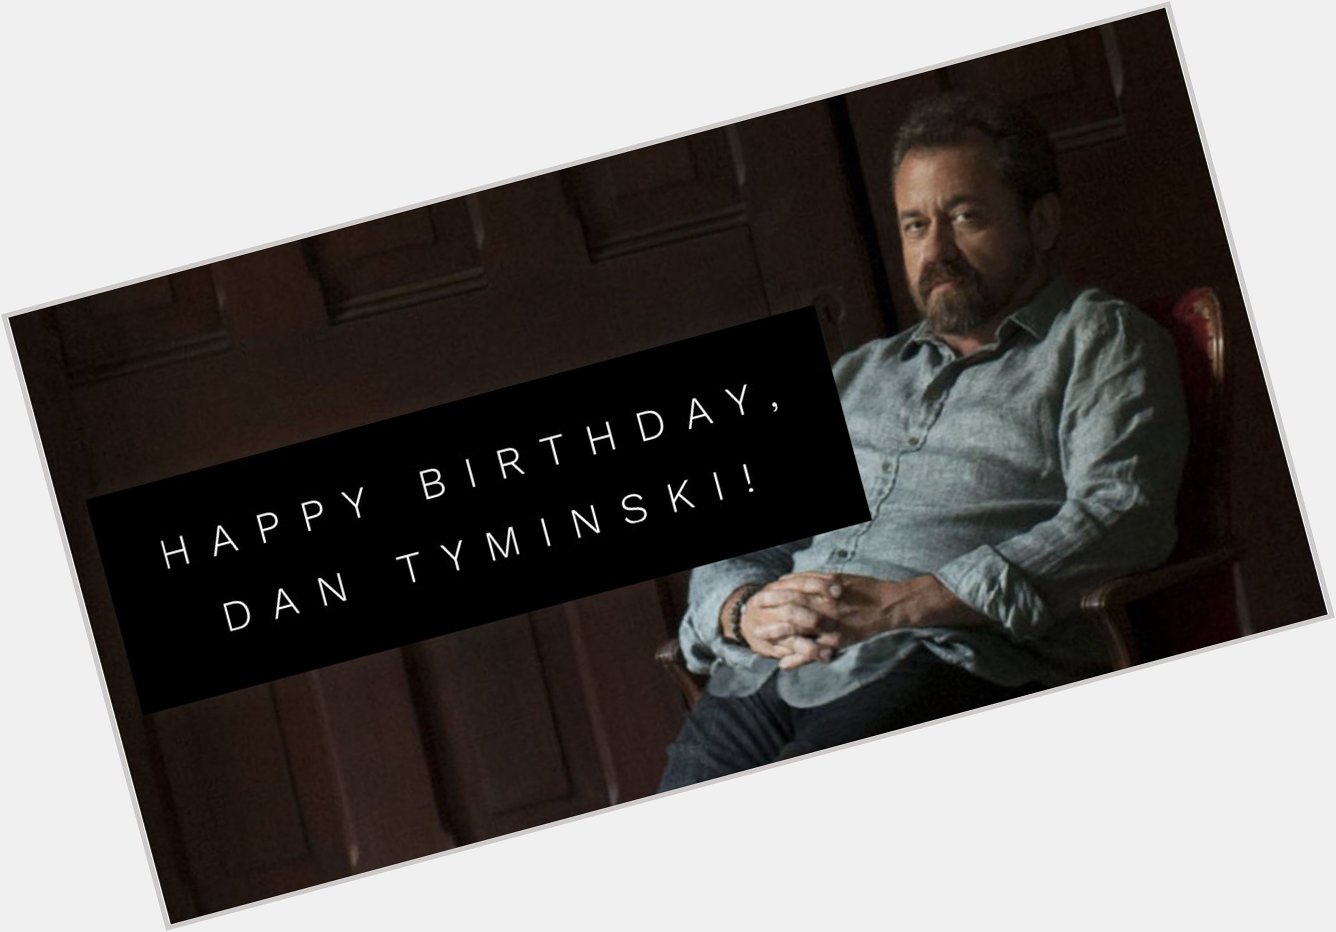 Our buddy, Dan Tyminski is celebrating a birthday today! Happy Birthday, Dan!  